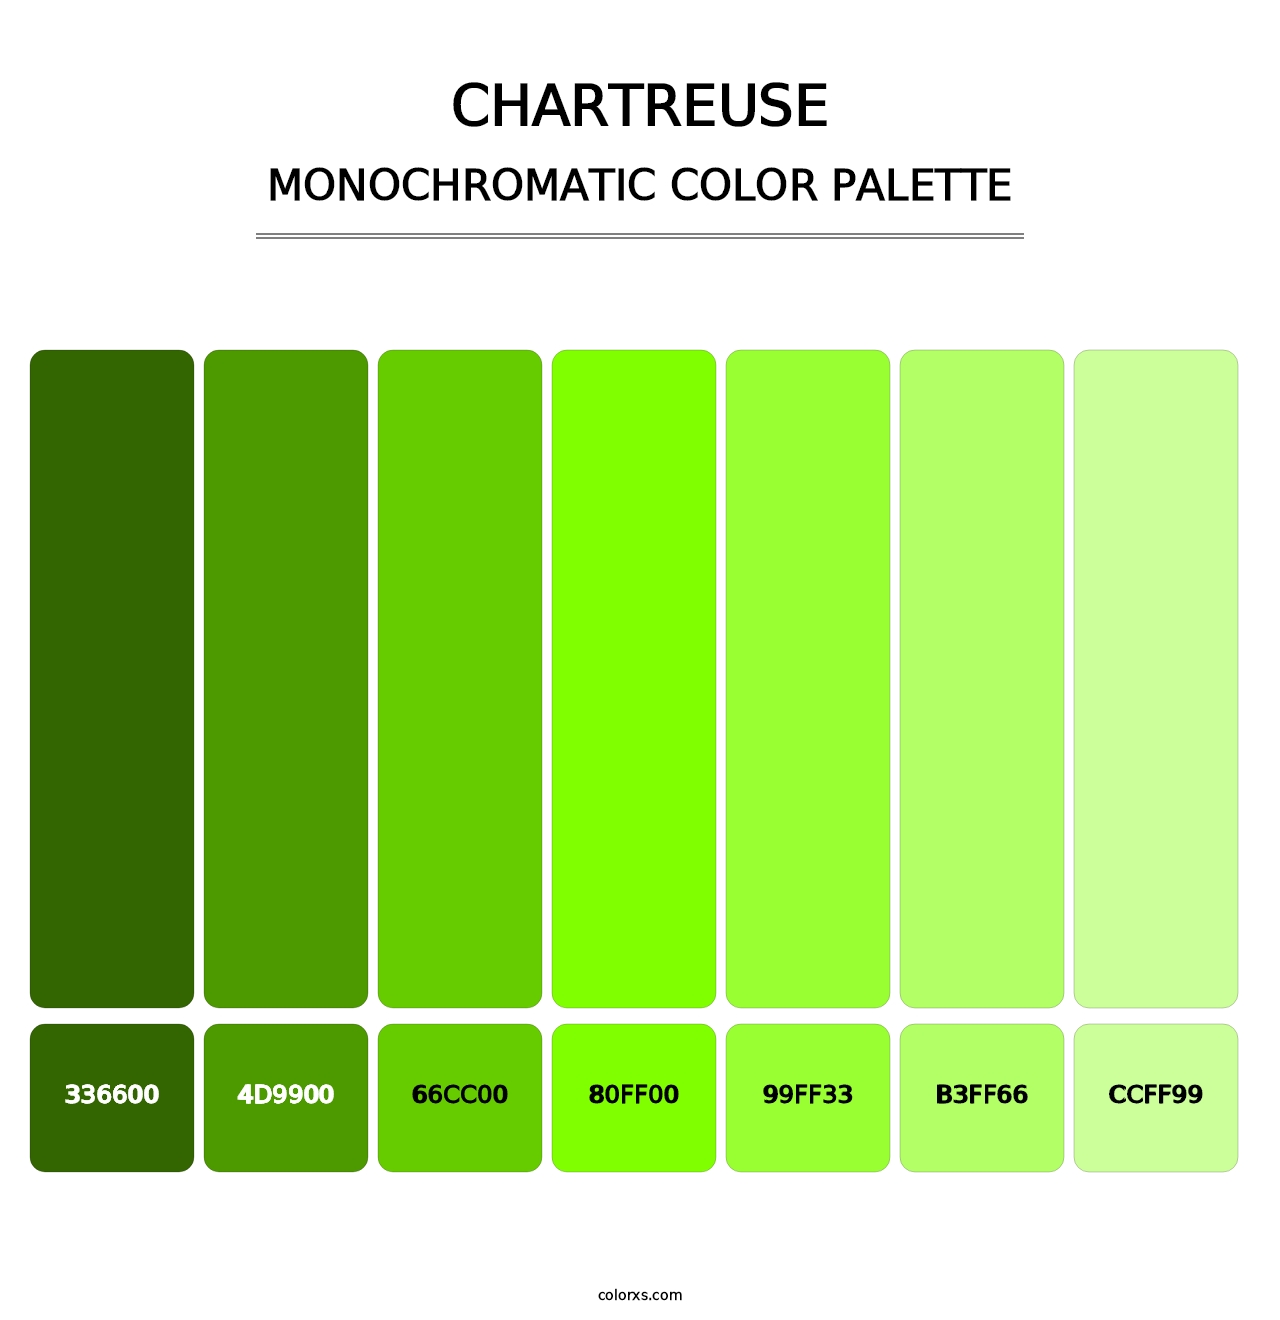 Chartreuse - Monochromatic Color Palette